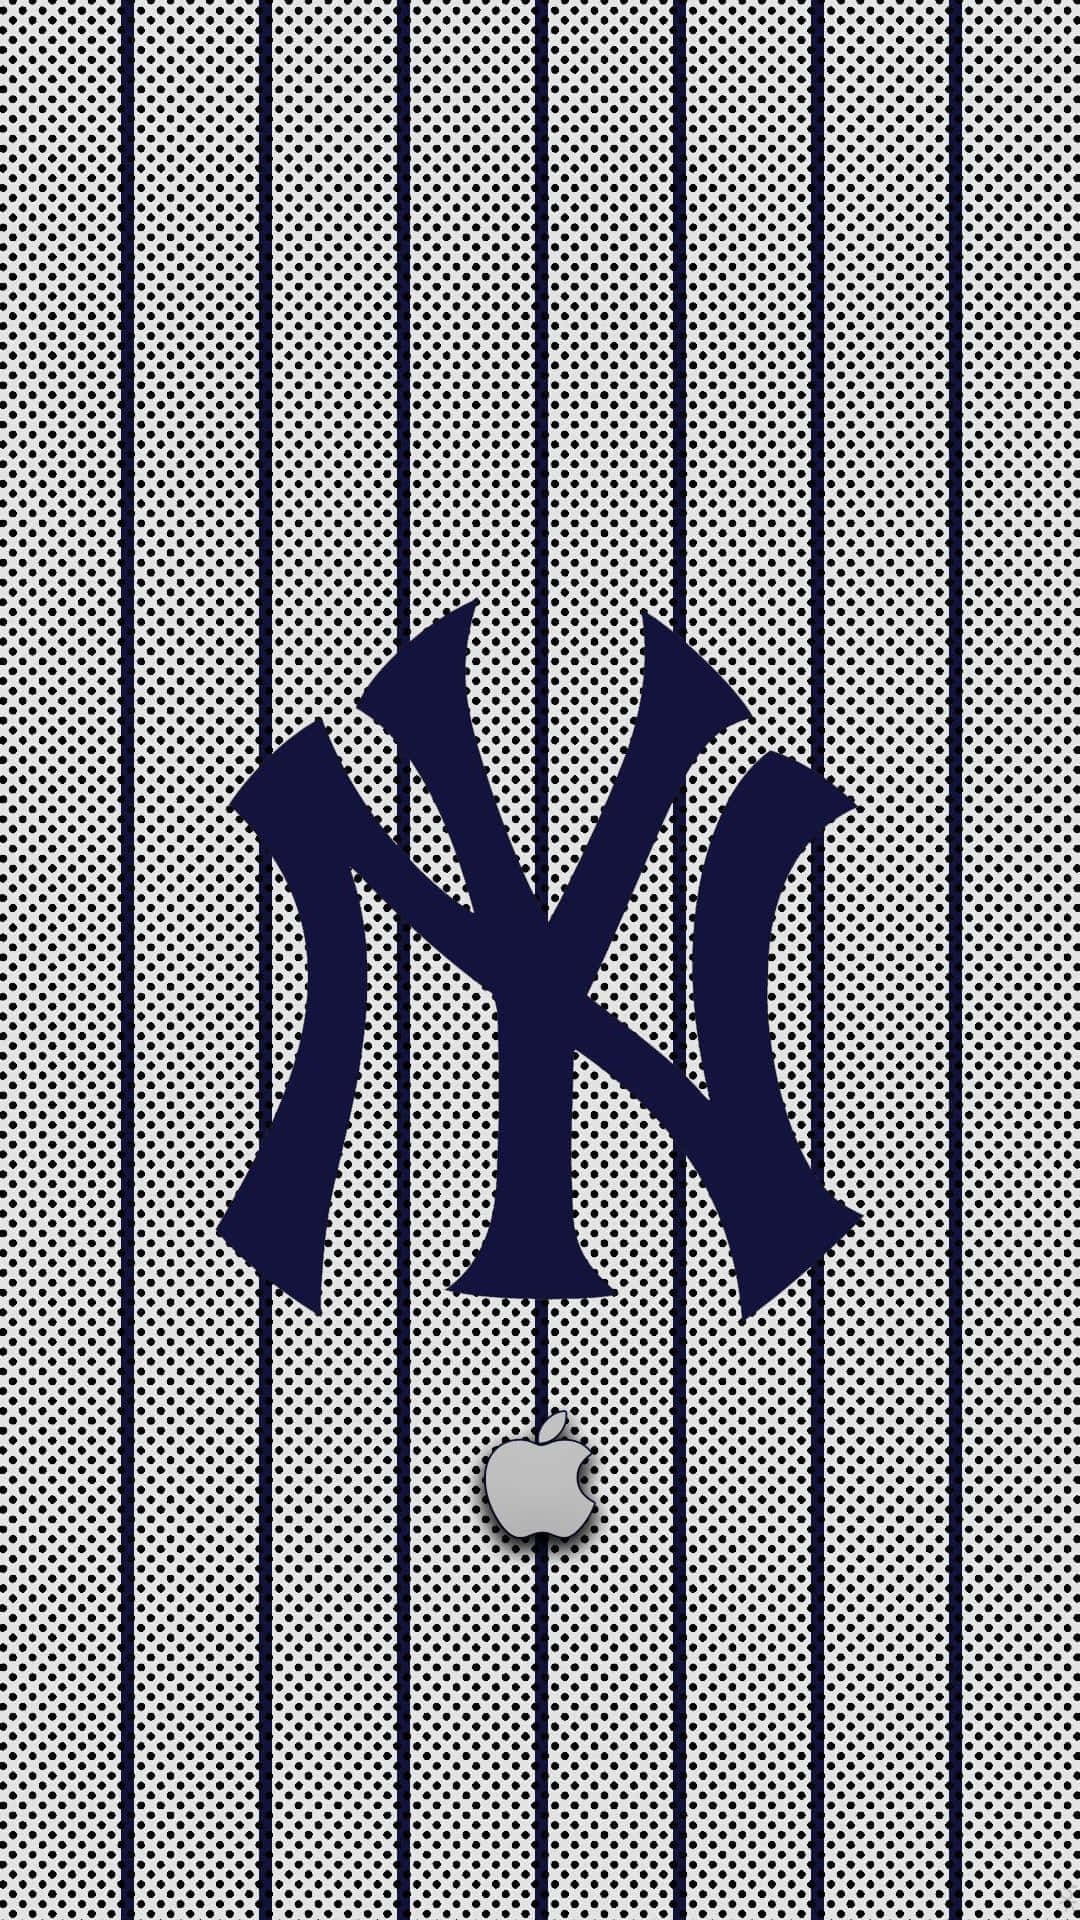 Genießensie Die Härtesten Rivalitäten Des Baseballs Mit Dem Offiziell Lizenzierten New York Yankees Iphone. Wallpaper